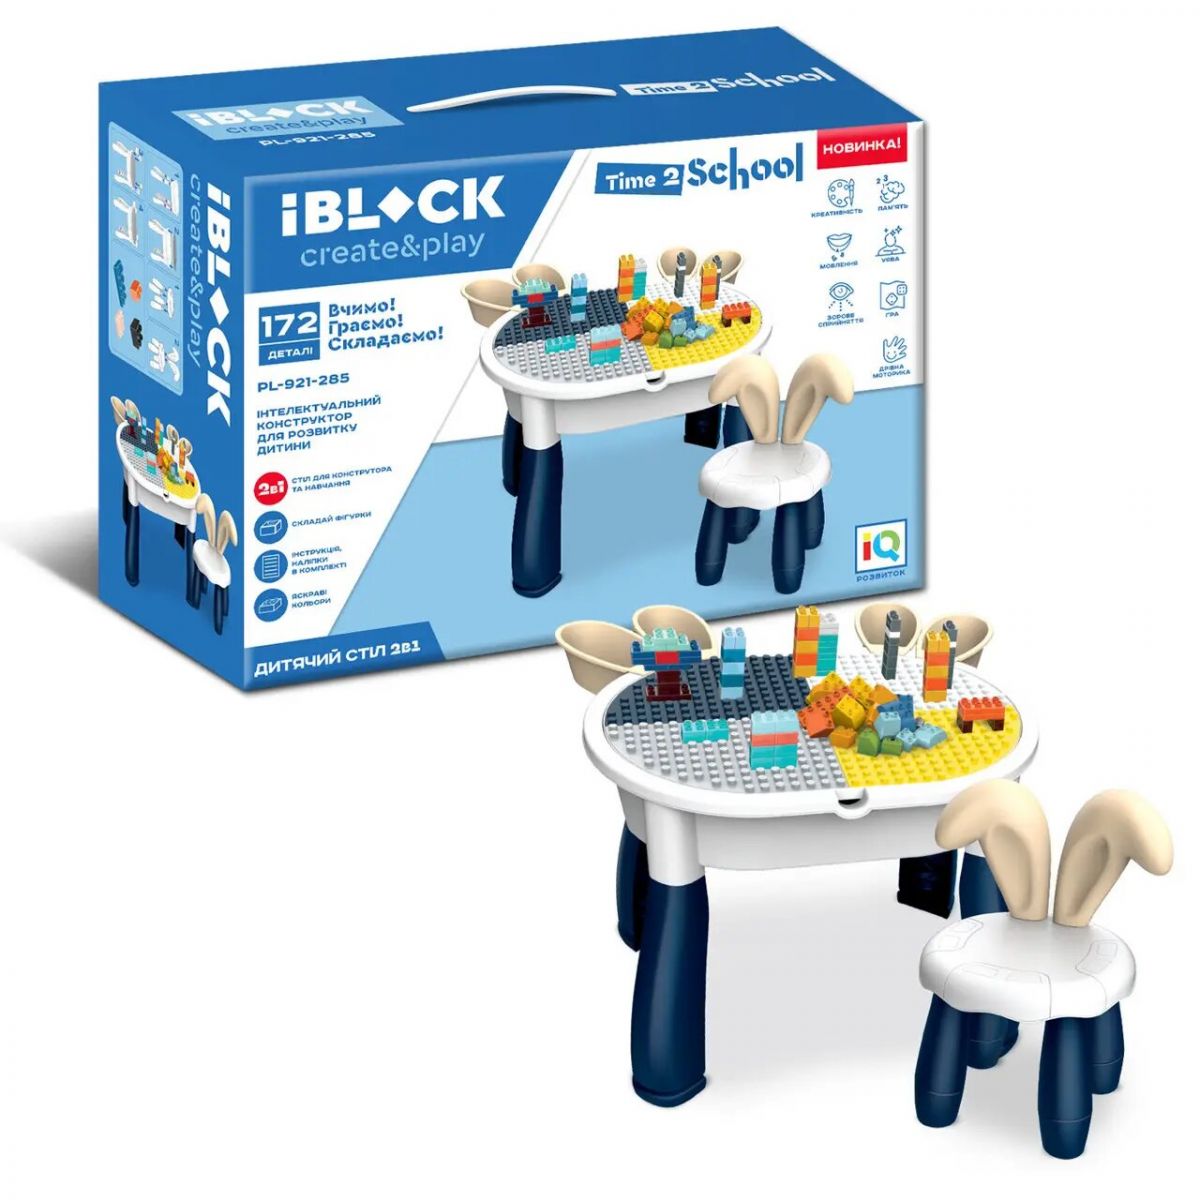 Конструктор "IBLOCK: Игровой стол + стул", в виде кролика, 172 детали